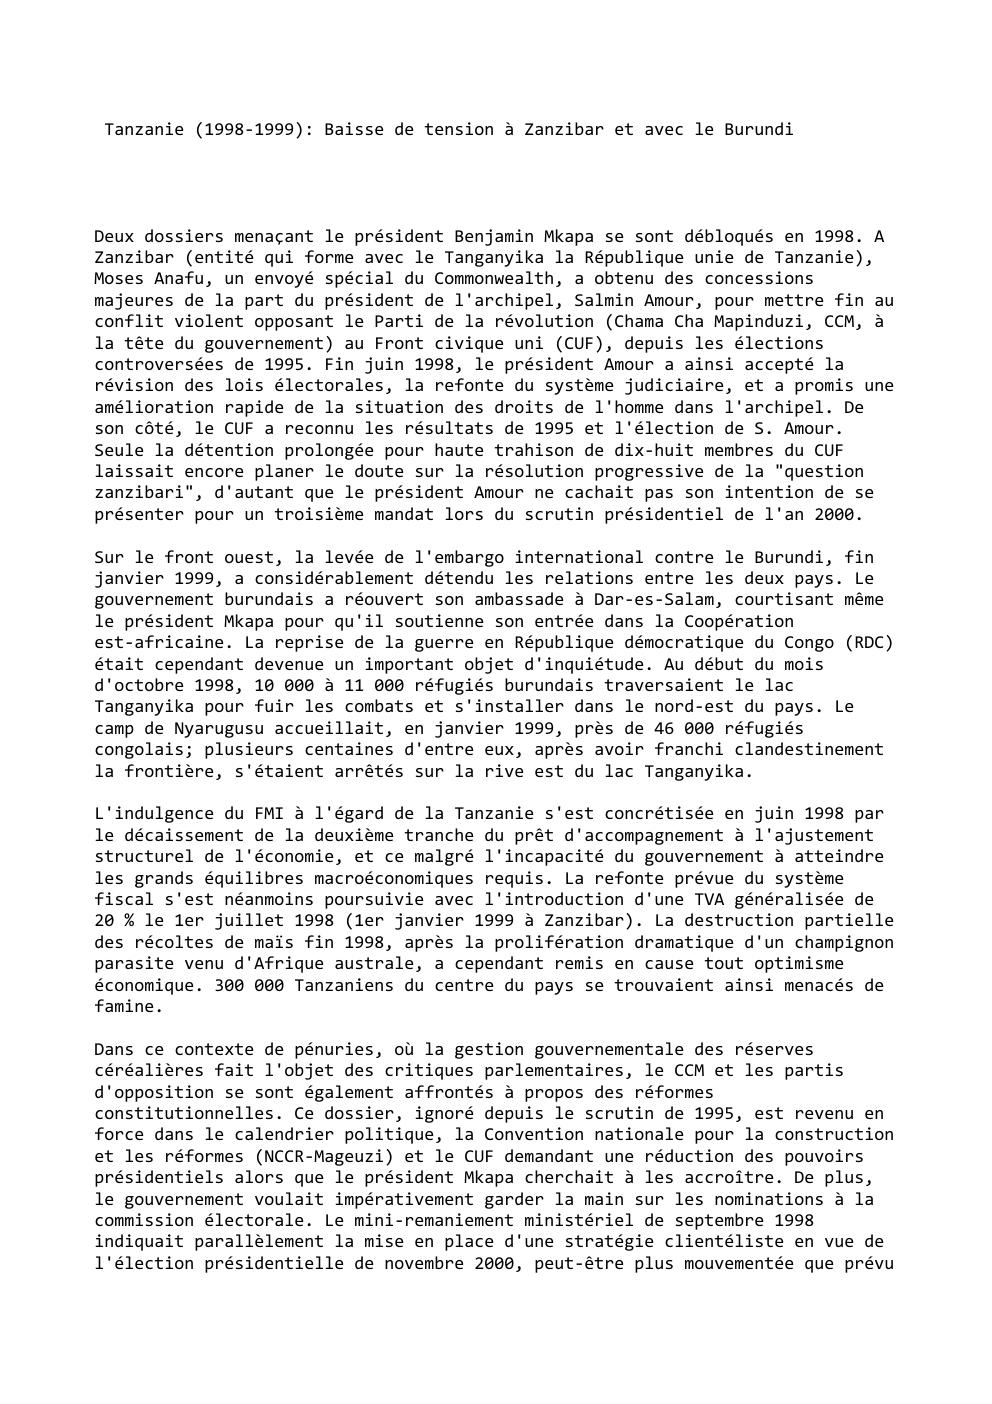 Prévisualisation du document Tanzanie (1998-1999): Baisse de tension à Zanzibar et avec le Burundi

Deux dossiers menaçant le président Benjamin Mkapa se sont...